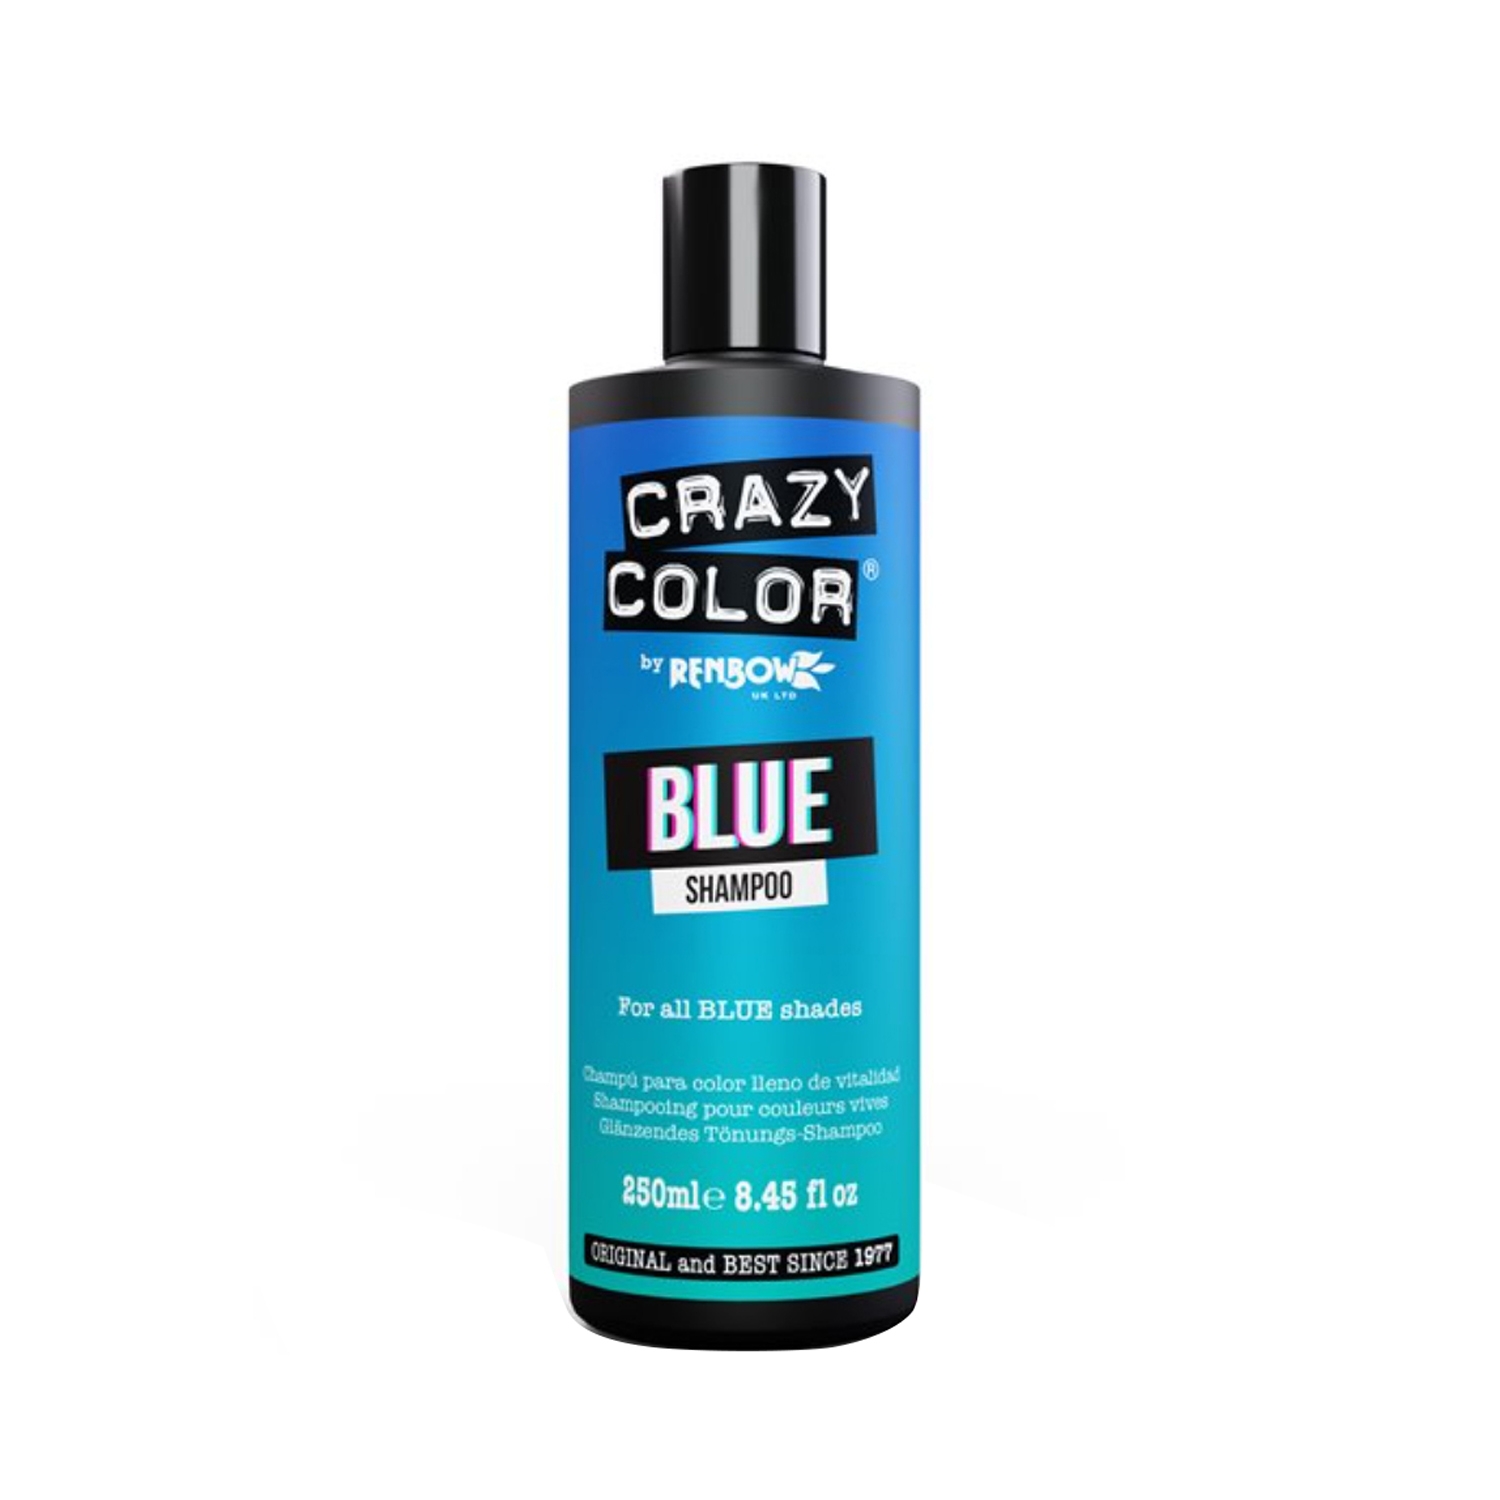 Crazy Color | Crazy Color Shampoo - Blue (250ml)